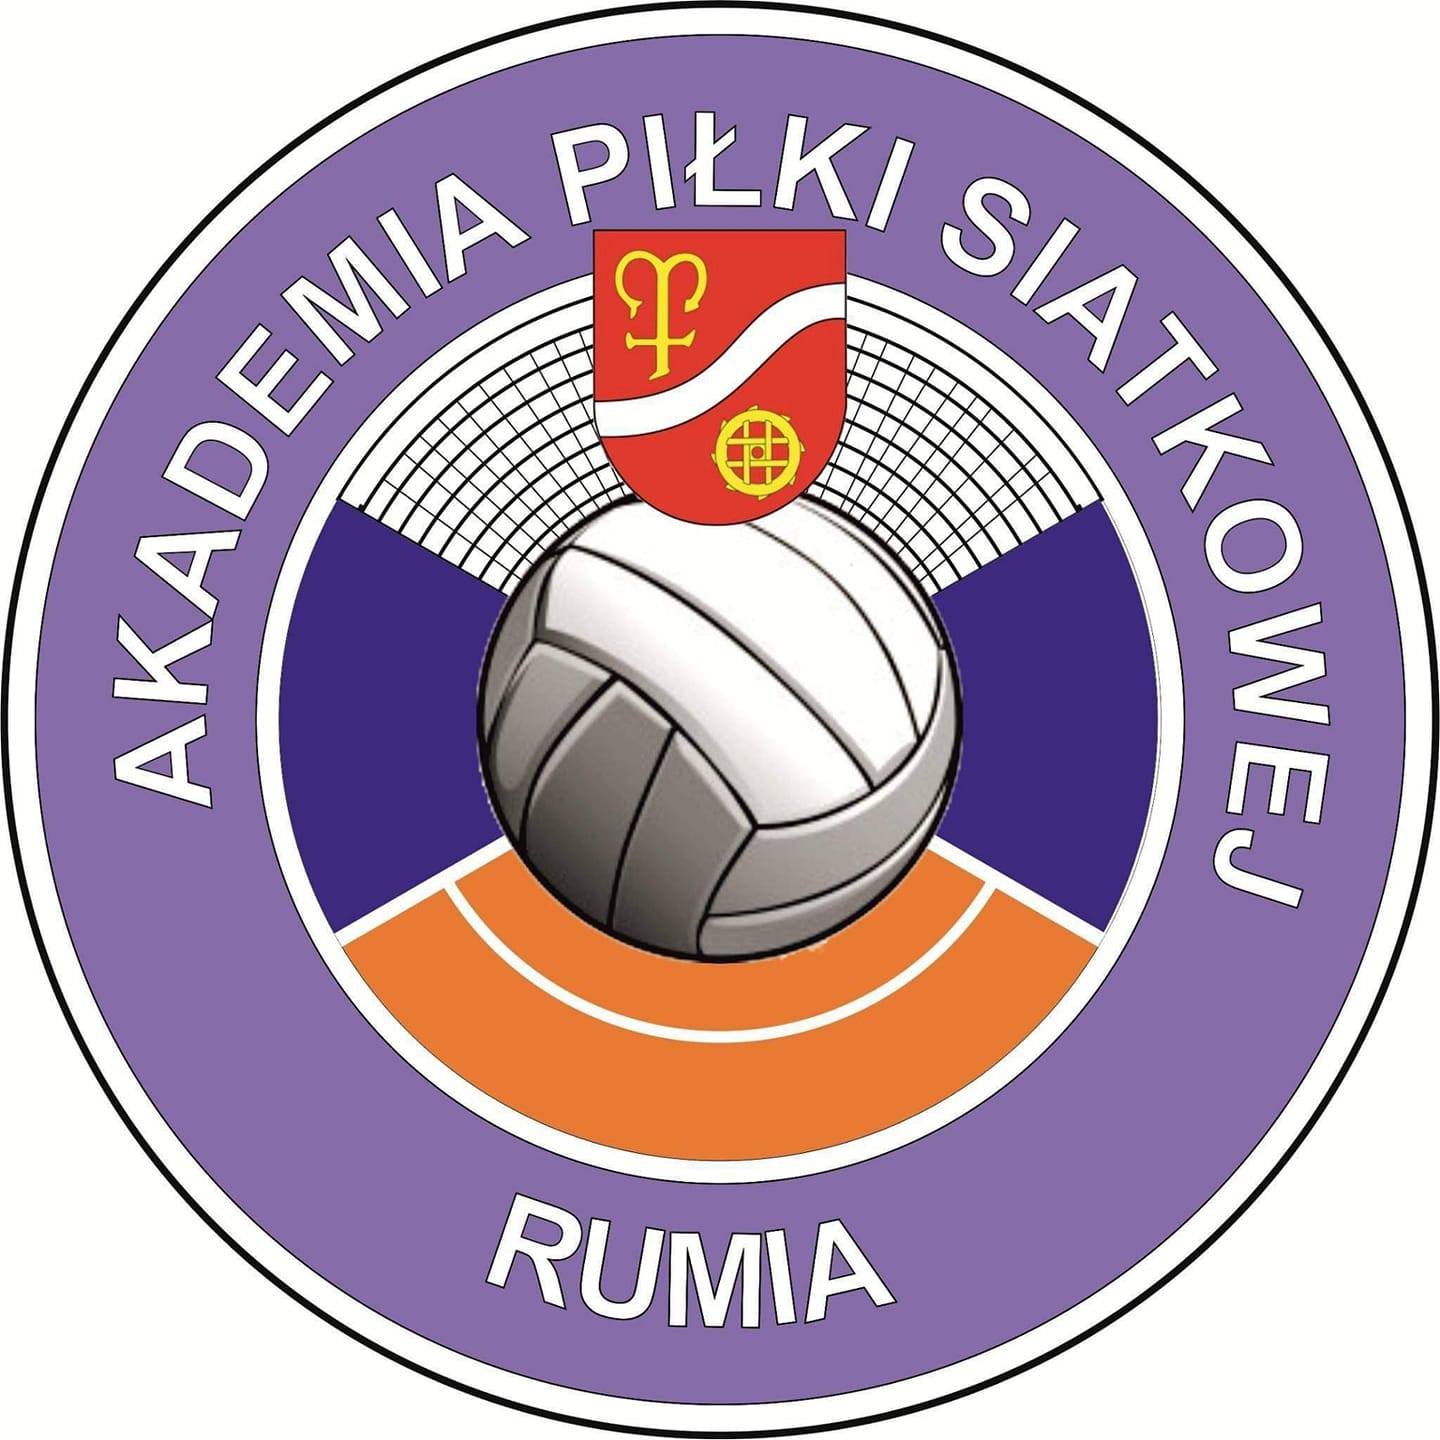 Akademia Piłki Siatkowej Rumia Logo